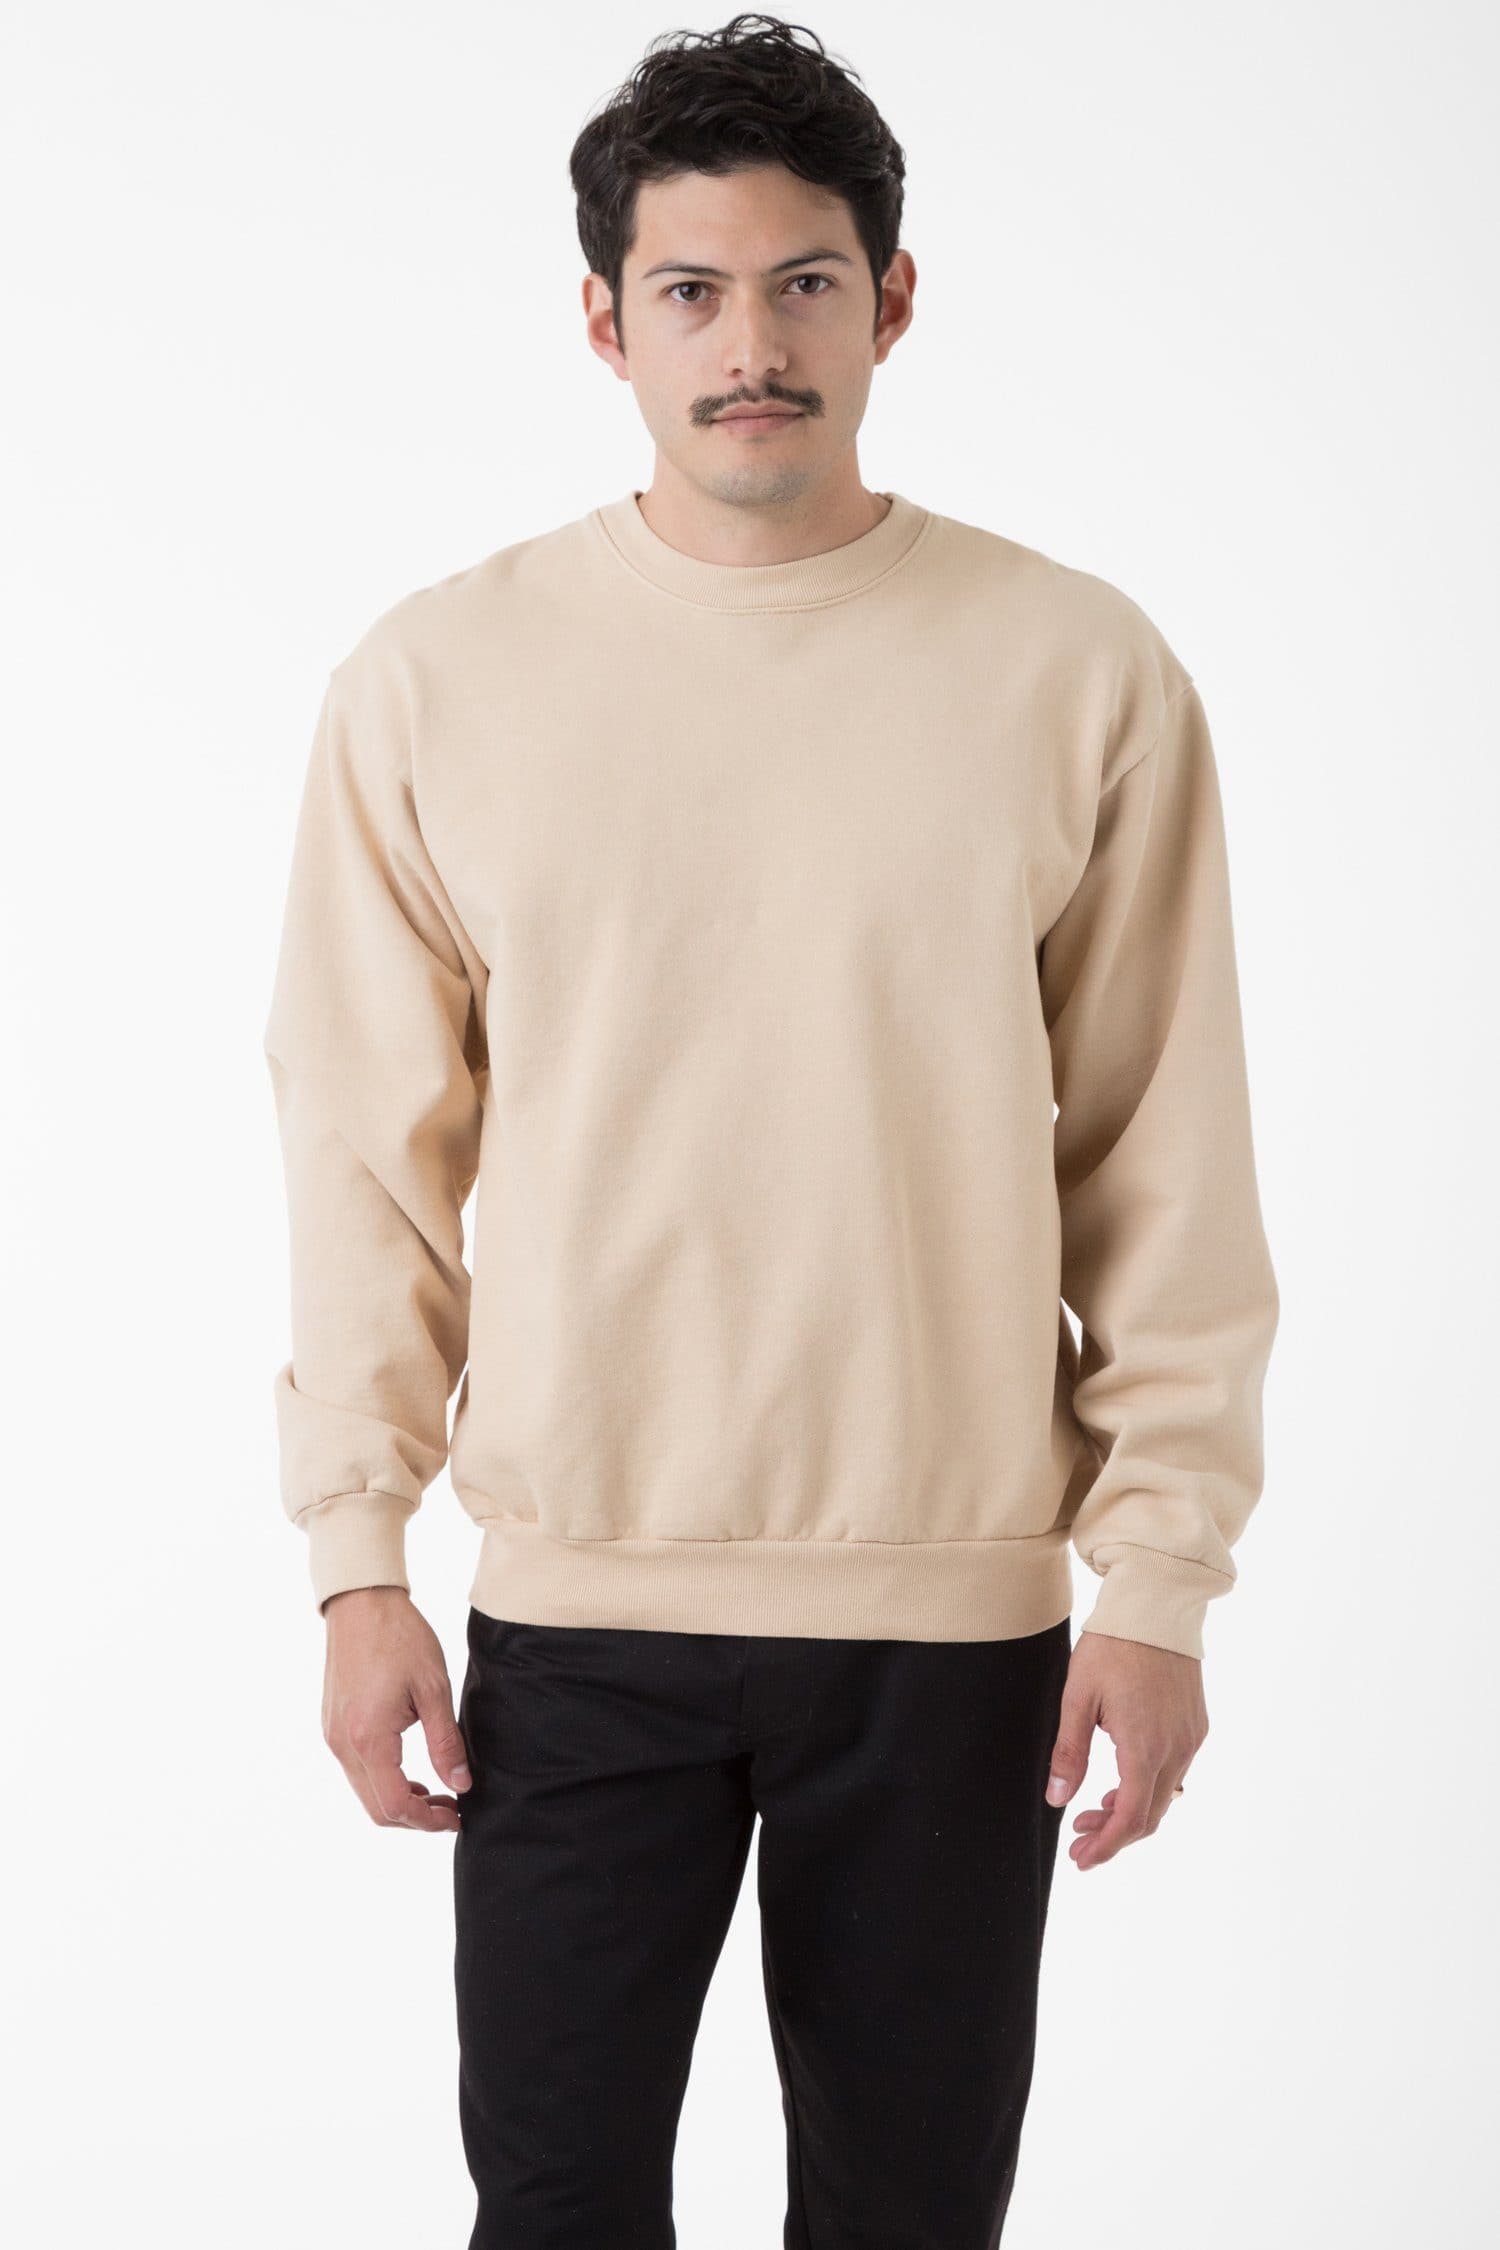 HF07 - Heavy Fleece Crewneck Sweatshirt (Piece Dye)